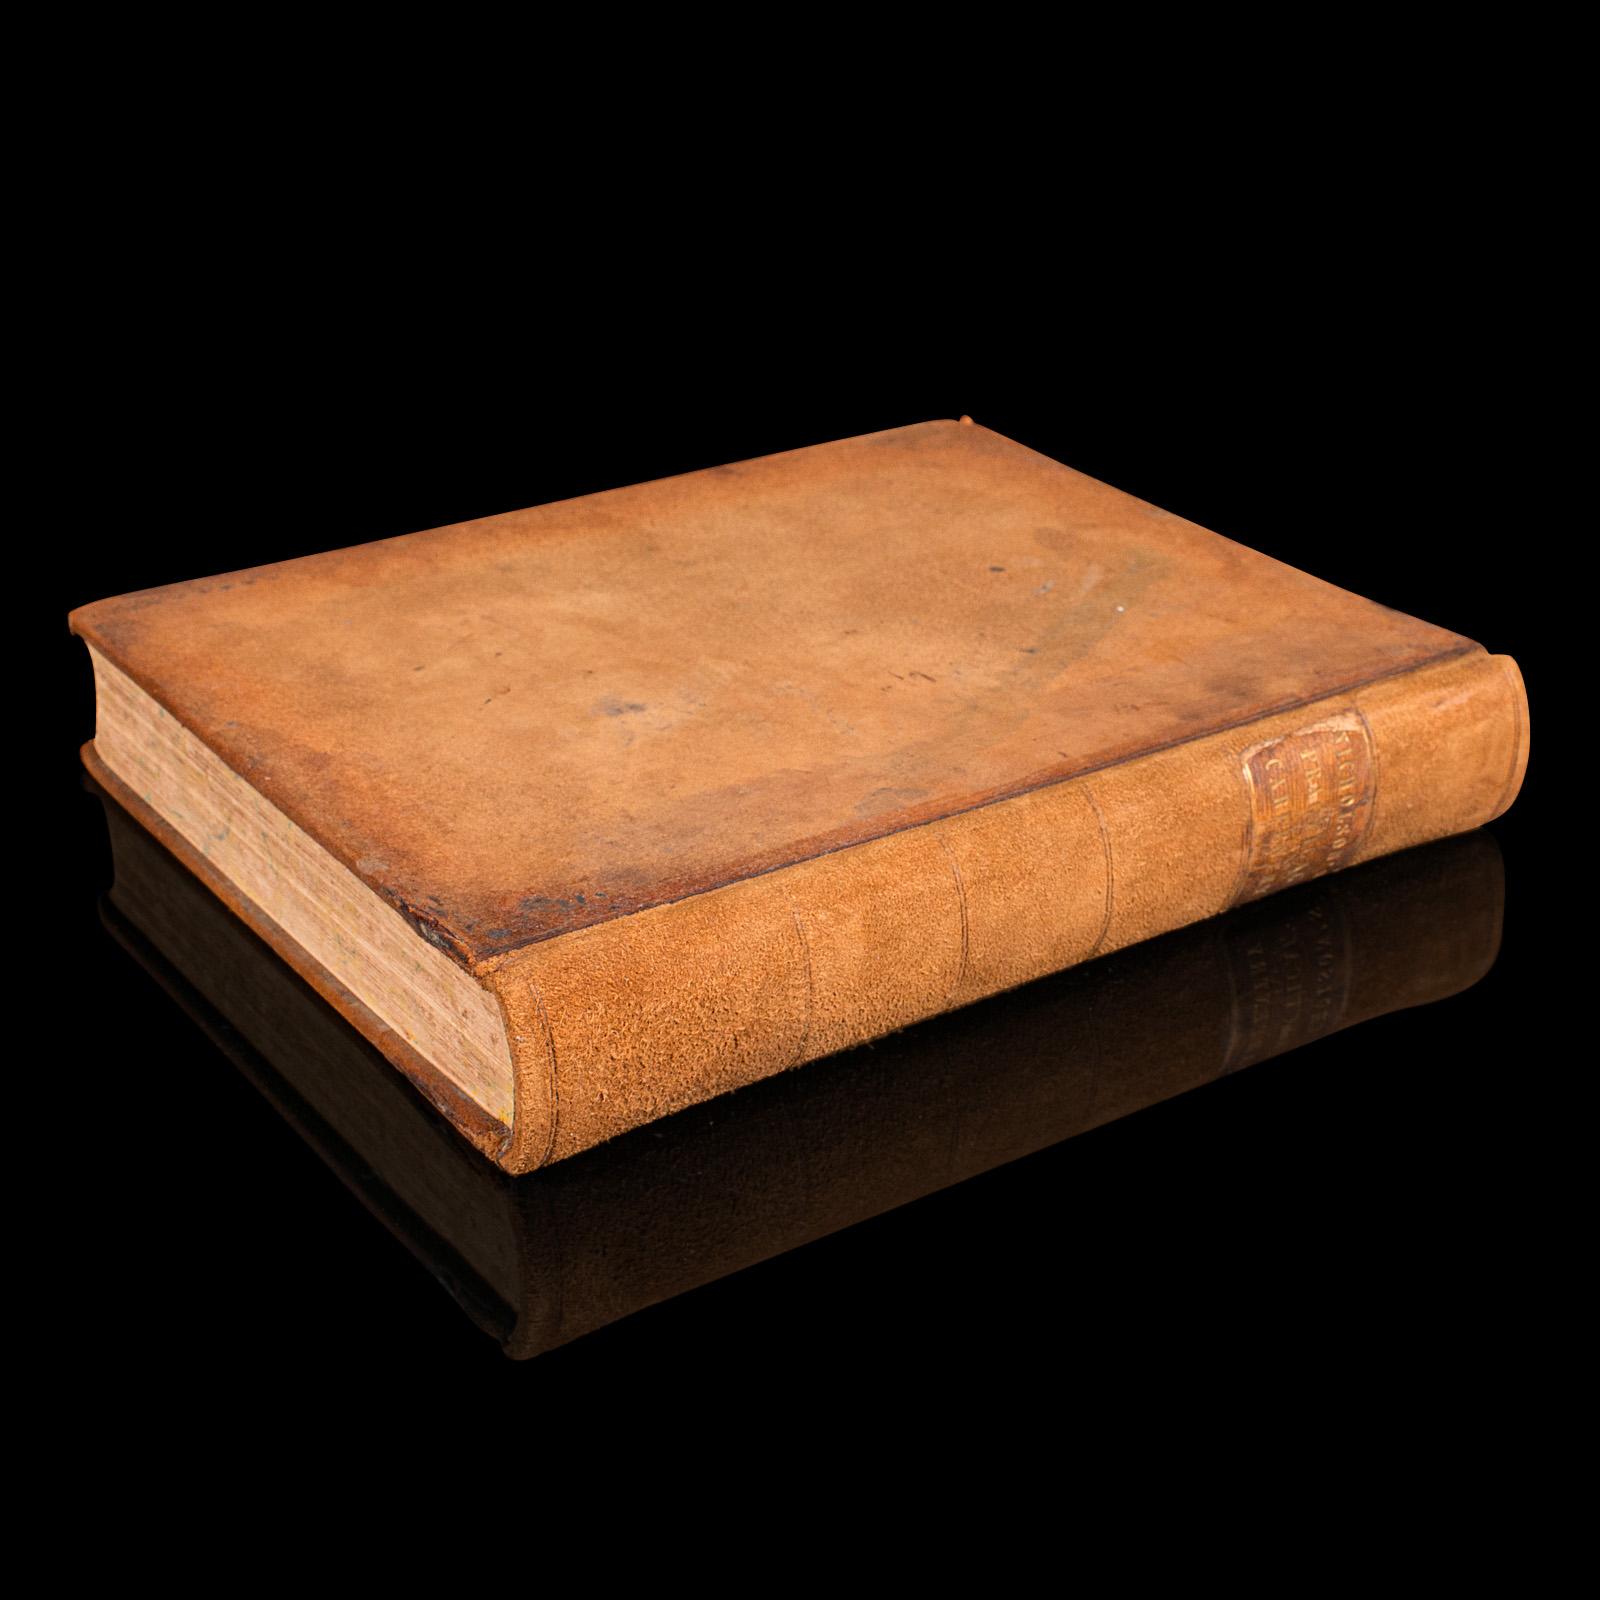 Il s'agit d'un livre de menuiserie ancien de Peter Nicholson. Guide de référence en anglais, relié, datant de la période victorienne, publié en 1854.

Titres complets : Nicholson's Practical Carpentry, révisé par Thomas Tredgold.